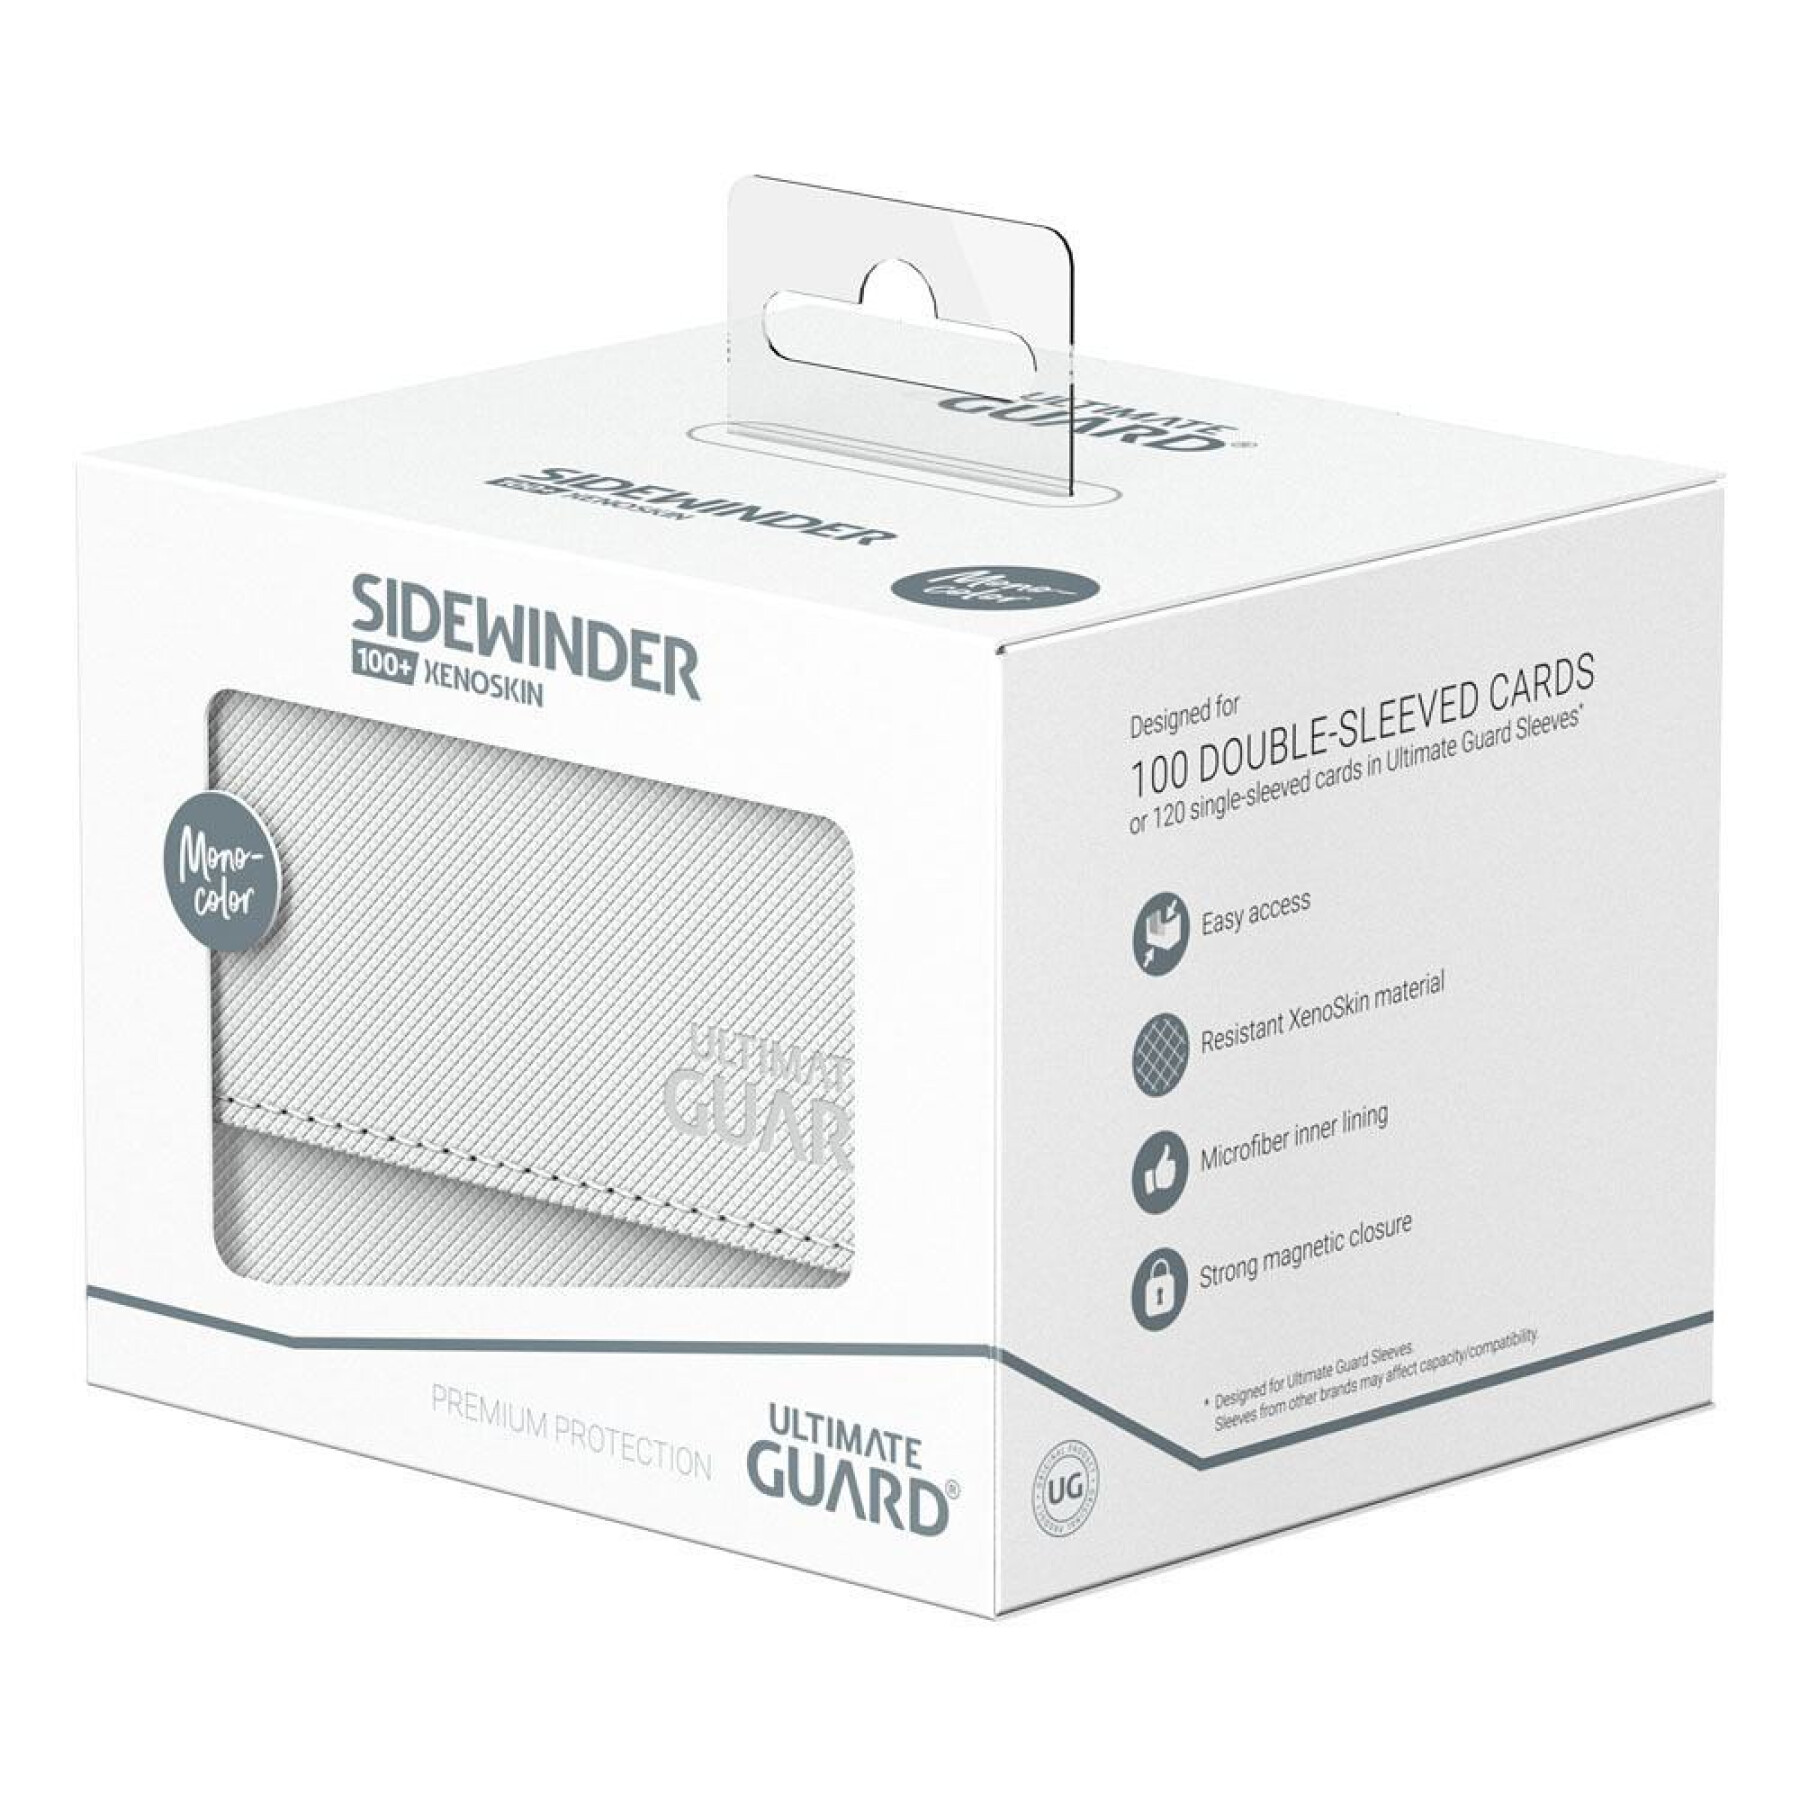 Aufbewahrungsbox Ultimate Guard Sidewinder 100+ Xenoskin